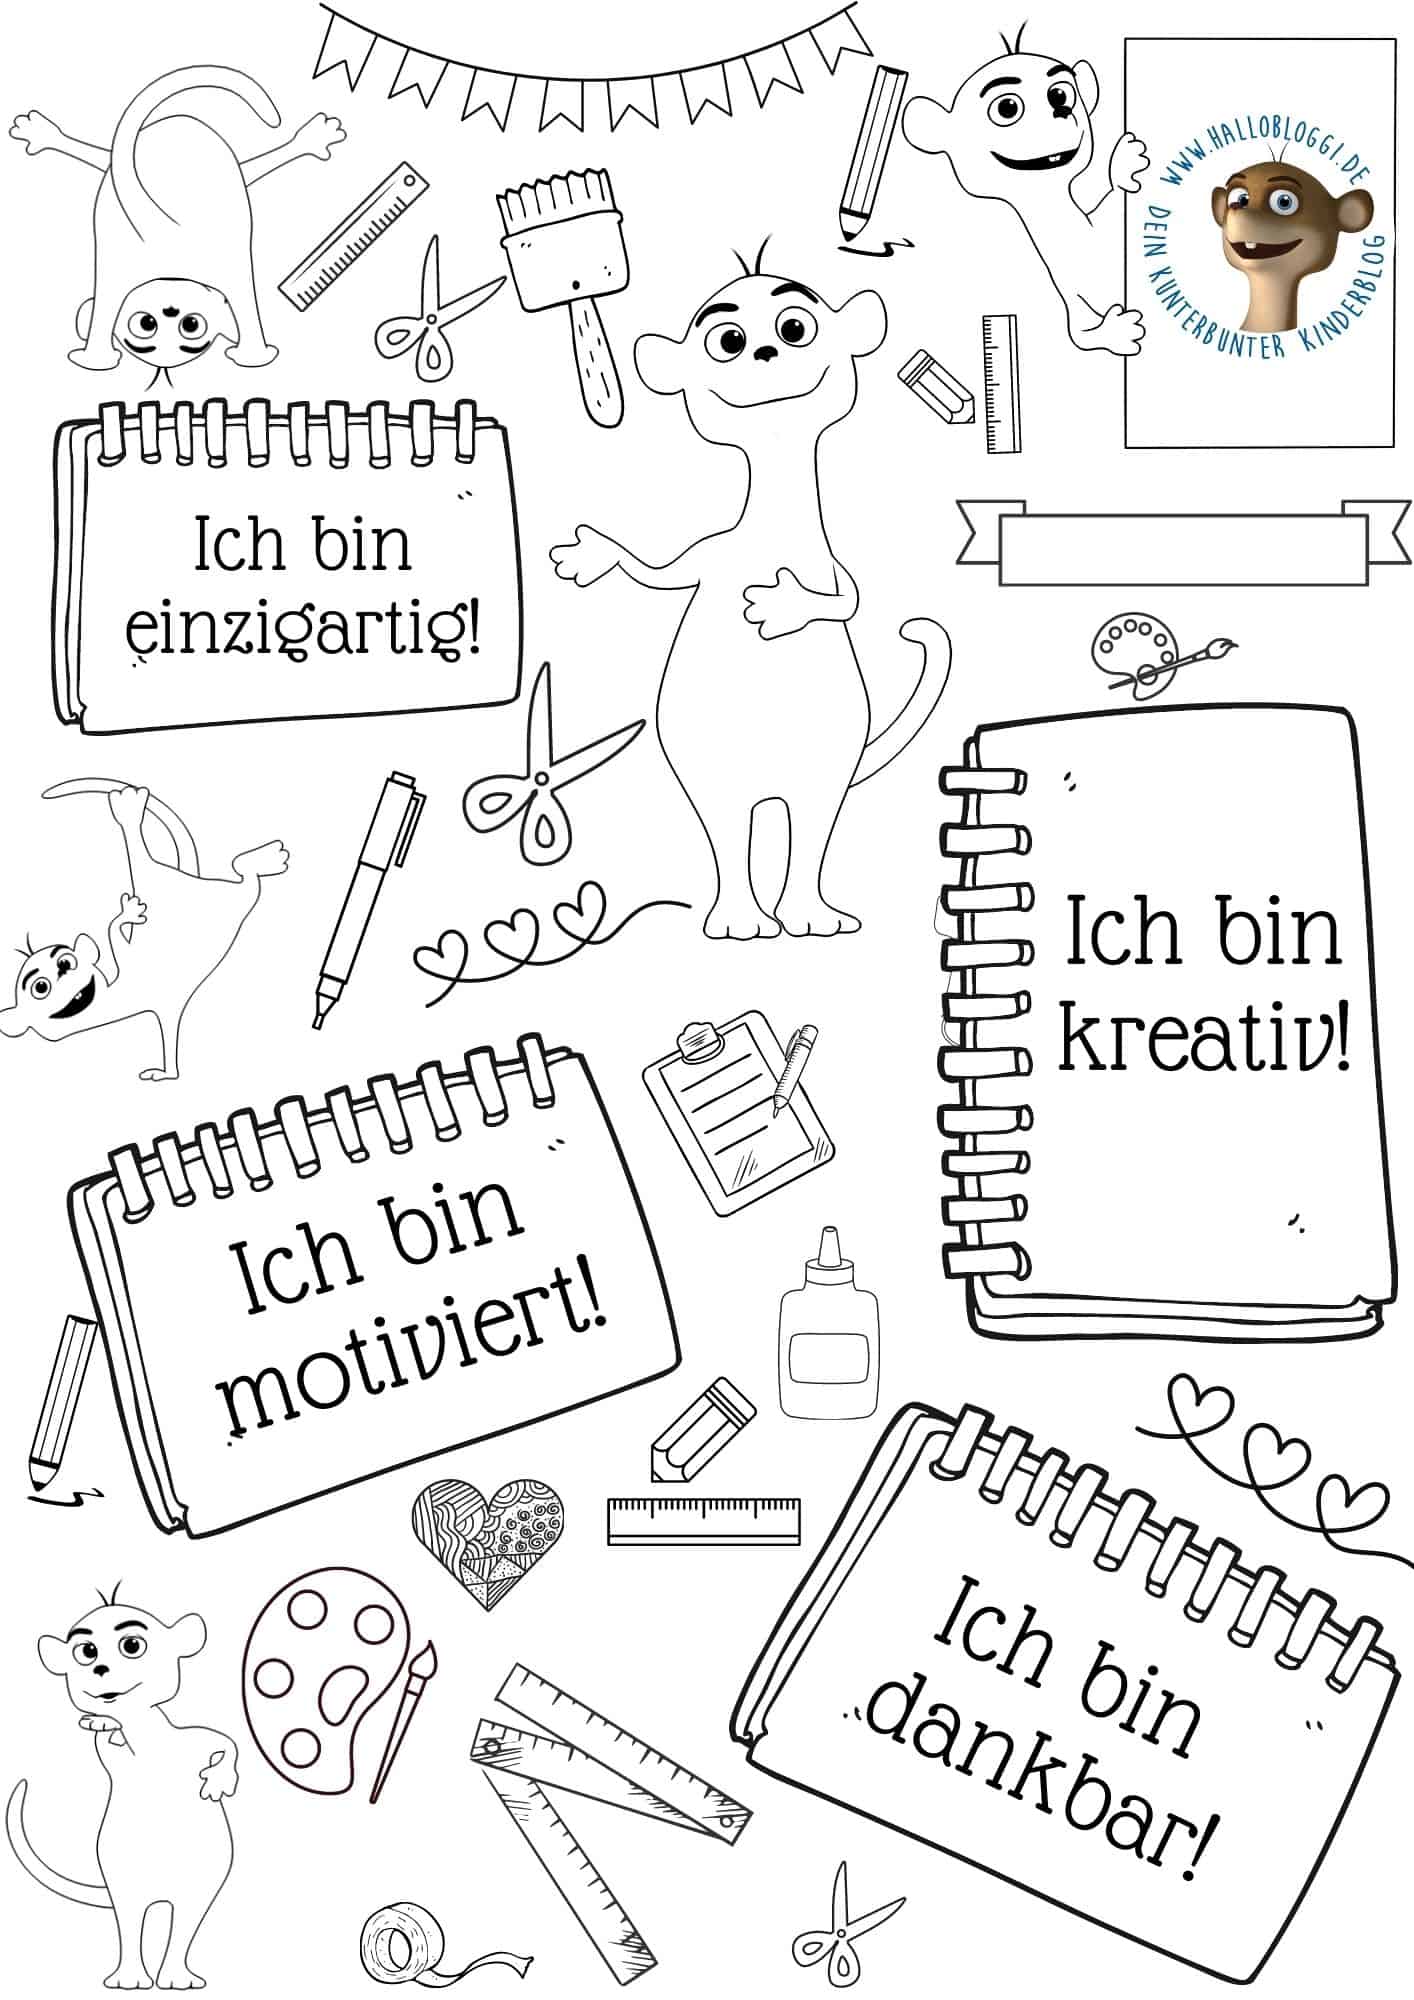 Featured image for “Affirmationen für Kinder: Ein Ausmalbogen”